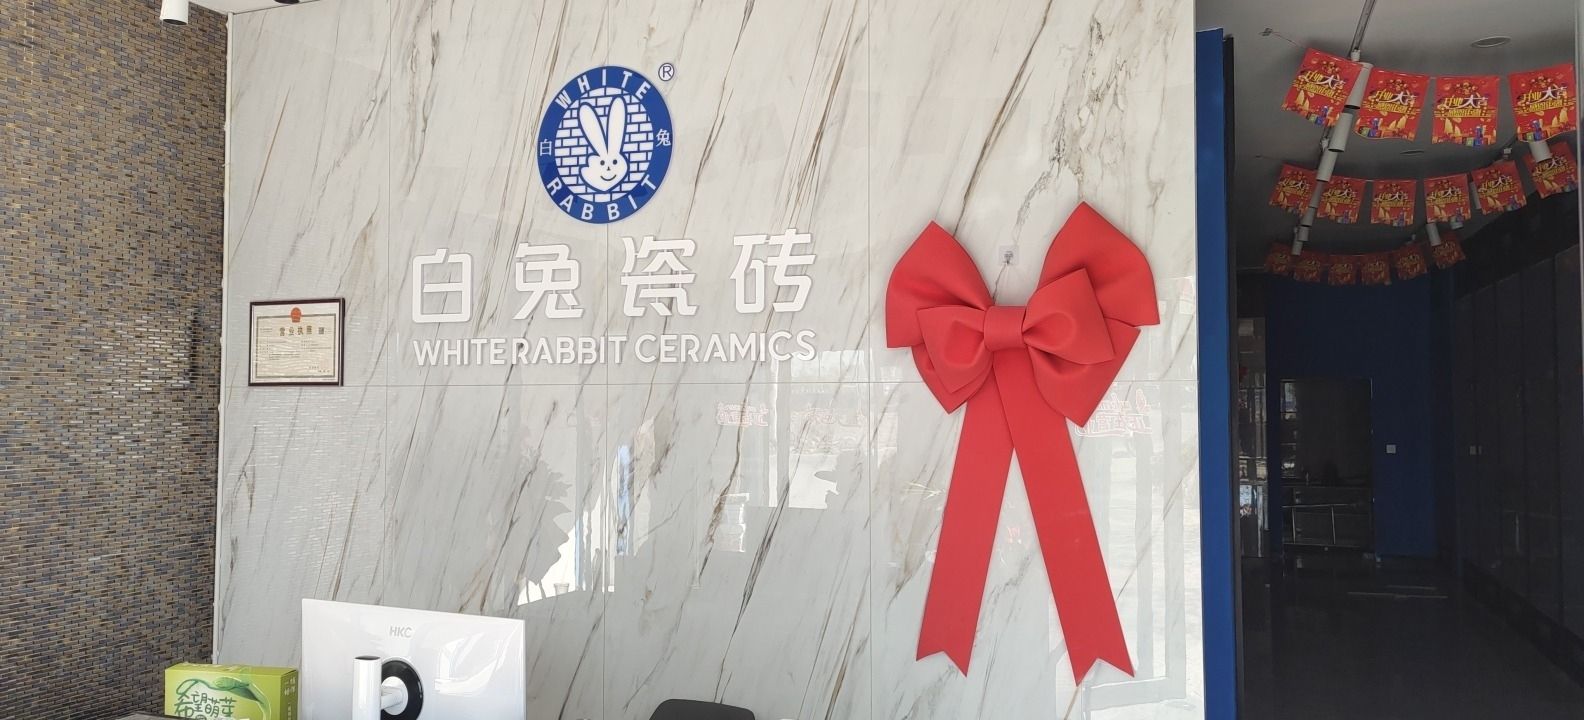 周口白兔瓷砖(大广高速店)